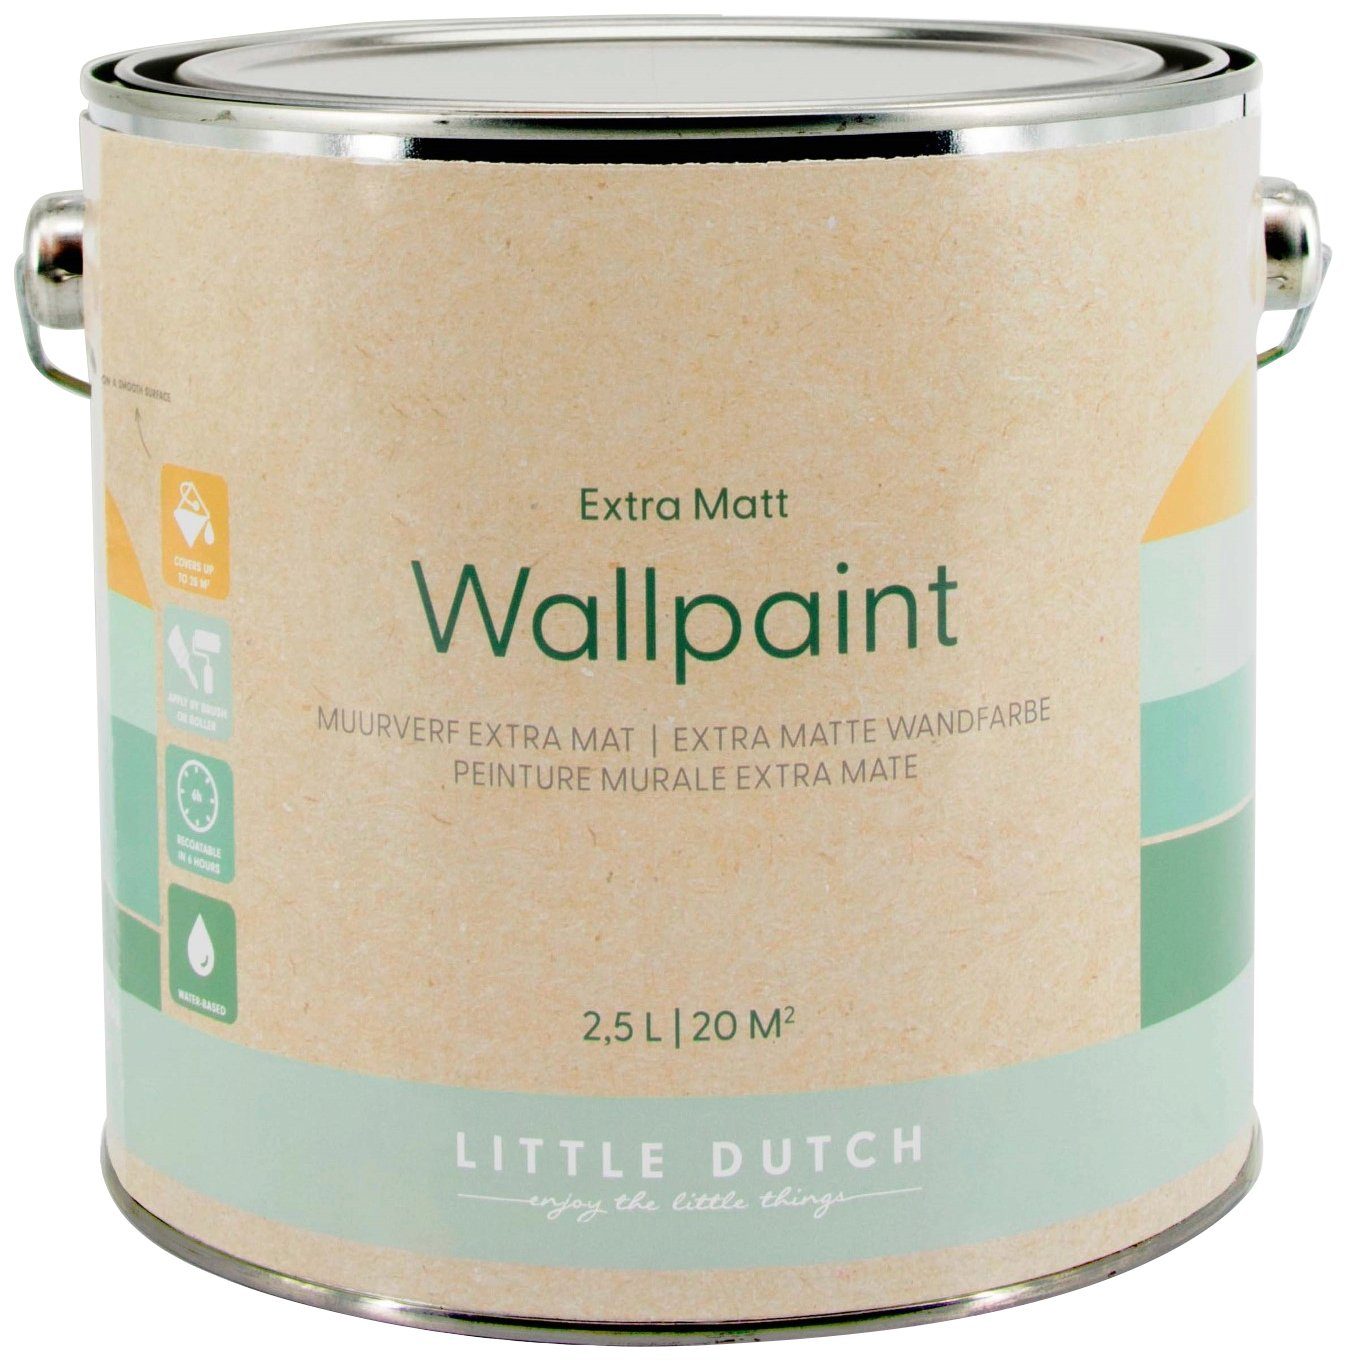 LITTLE DUTCH Wandfarbe Wallpaint, extra matt, hochdeckend und waschbeständig, für Kinderzimmer geeignet Faded Olive Grün